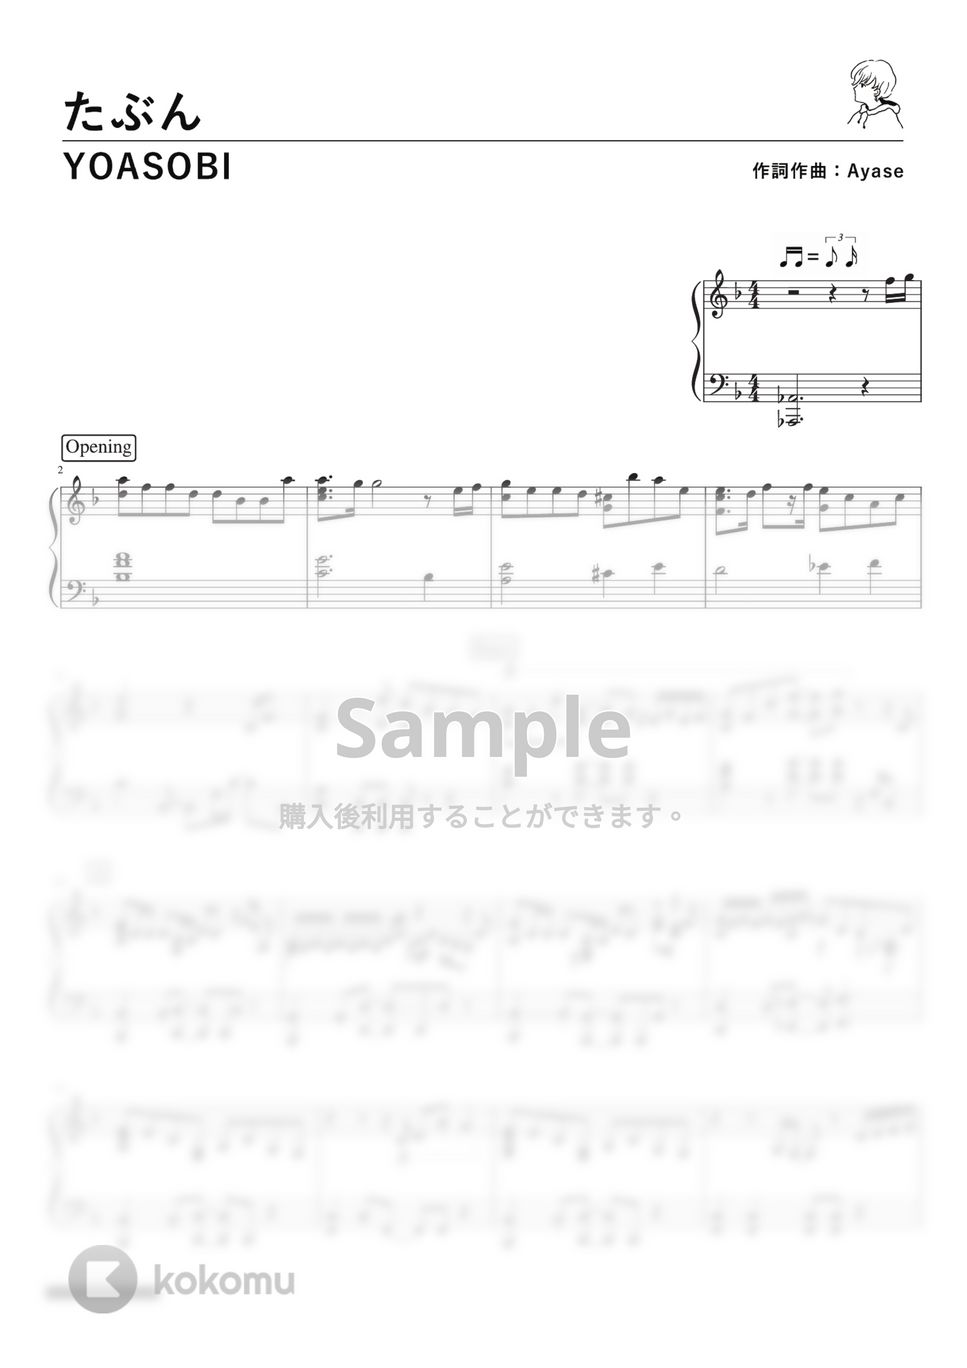 YOASOBI - たぶん (PianoSolo) by 深根 / Fukane